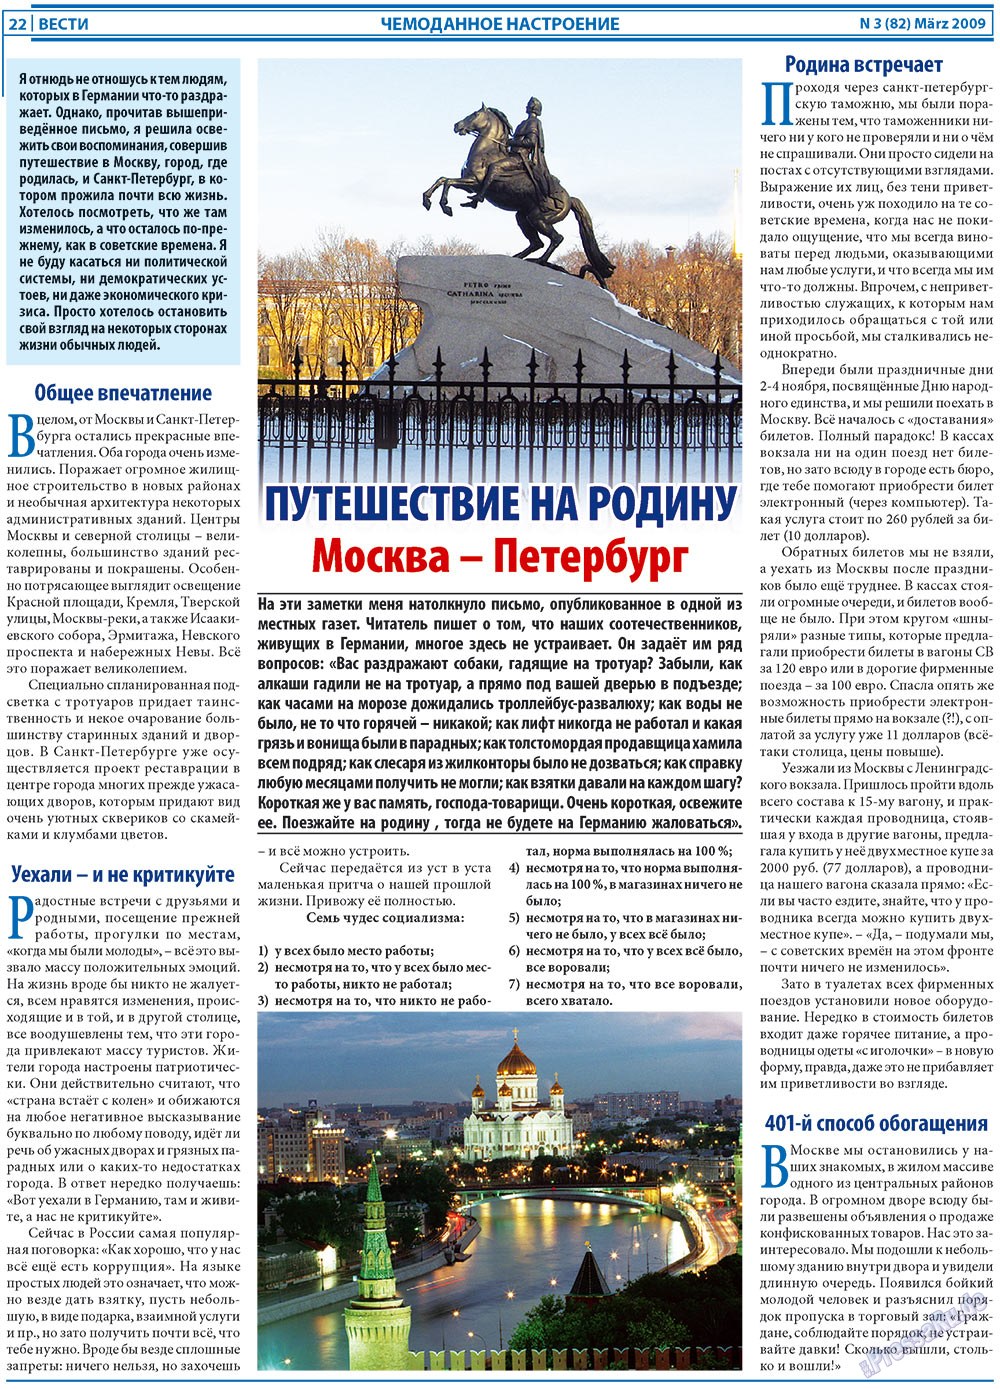 Вести, газета. 2009 №3 стр.22